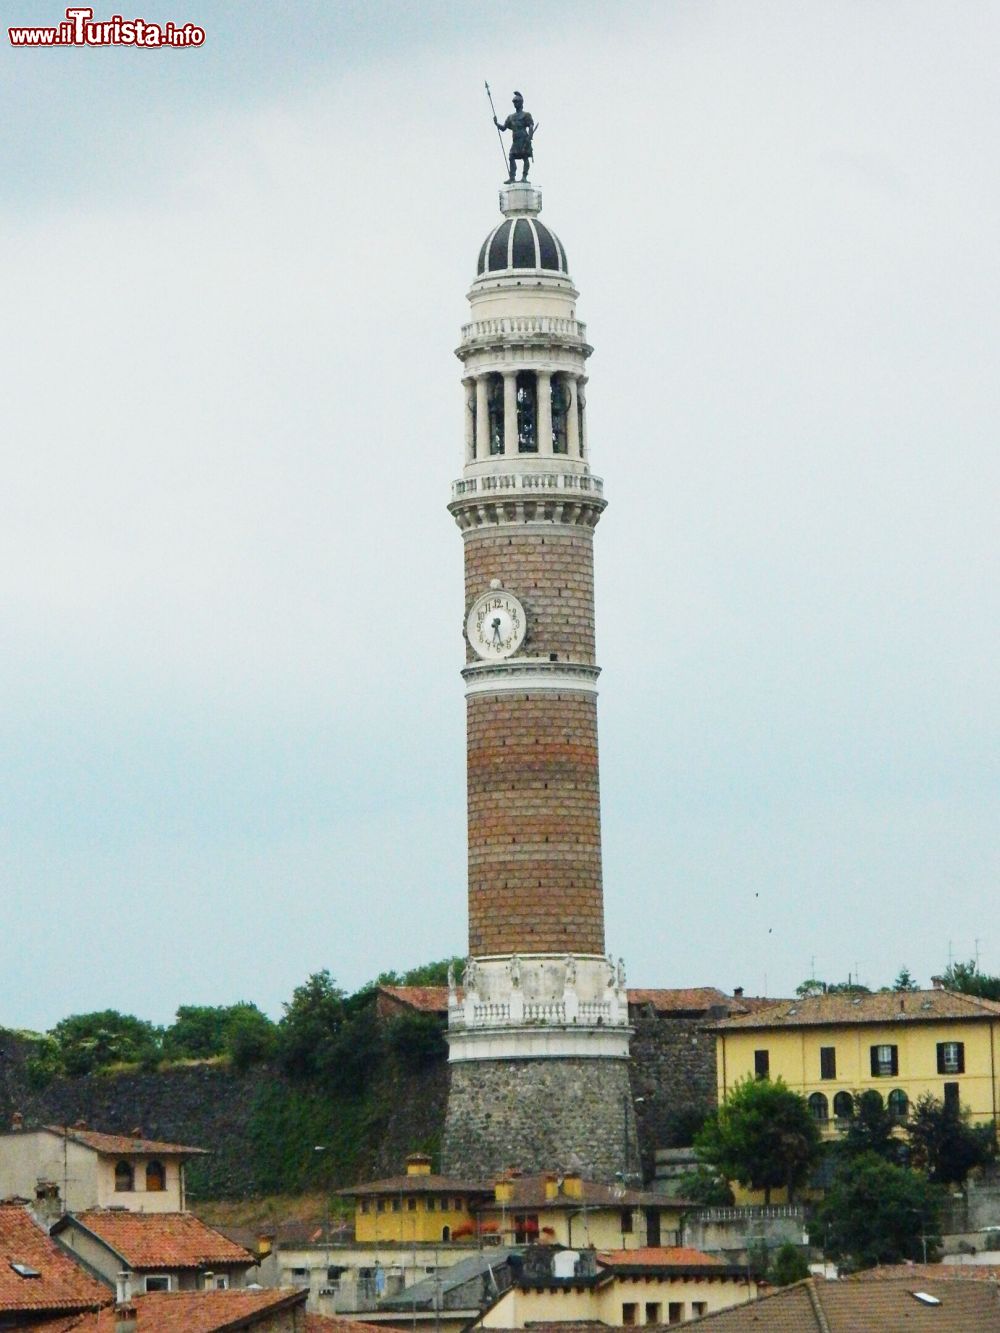 Immagine La Torre del Popolo di Palazzolo sull'Oglio è la torre civica campanaria a sezione circolare più alta d'Europa  - © Lukidd / Wikipedia